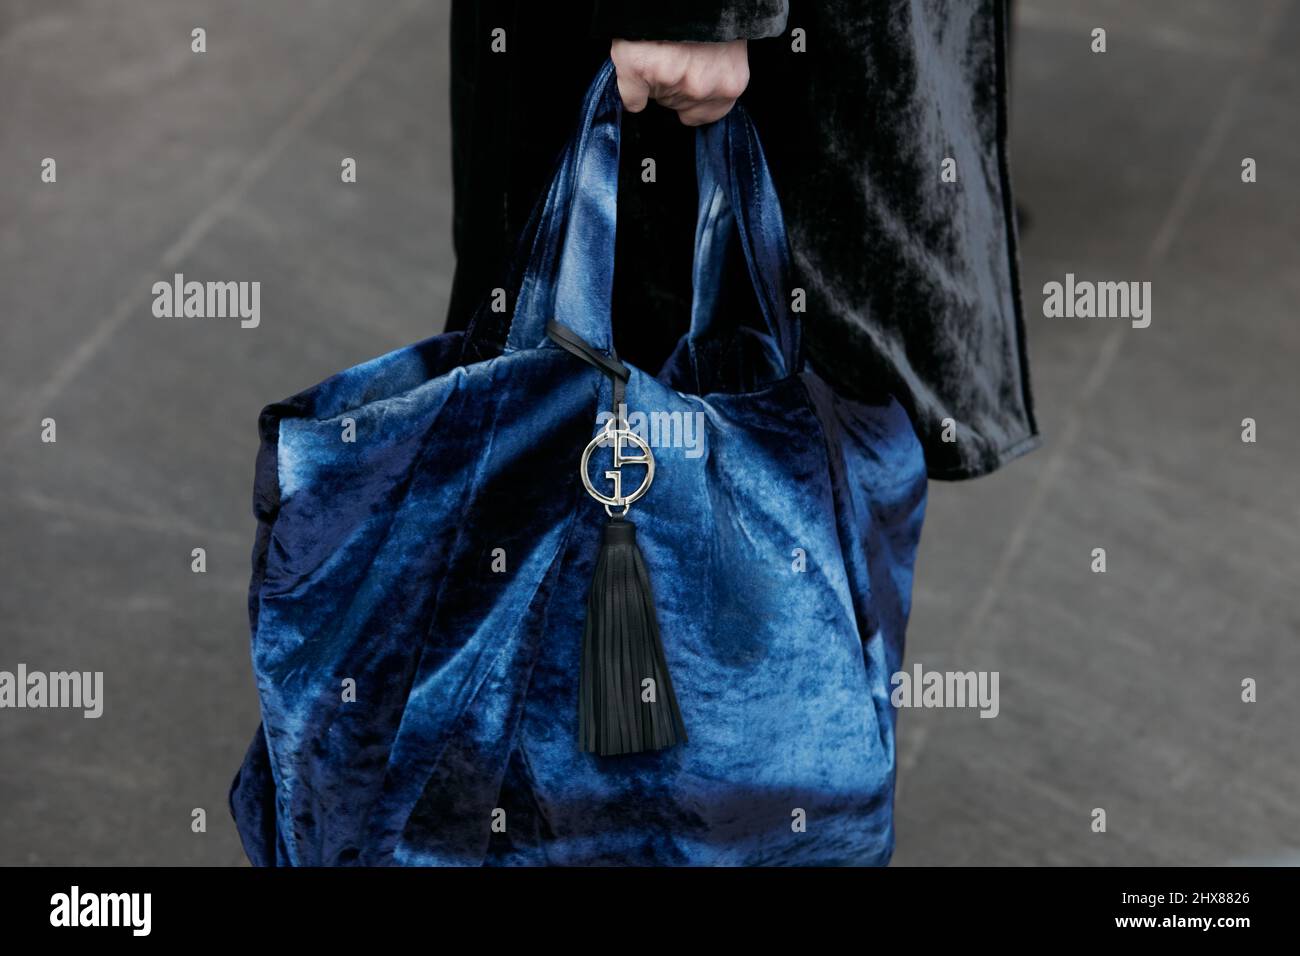 Giorgio armani bag immagini e fotografie stock ad alta risoluzione - Alamy